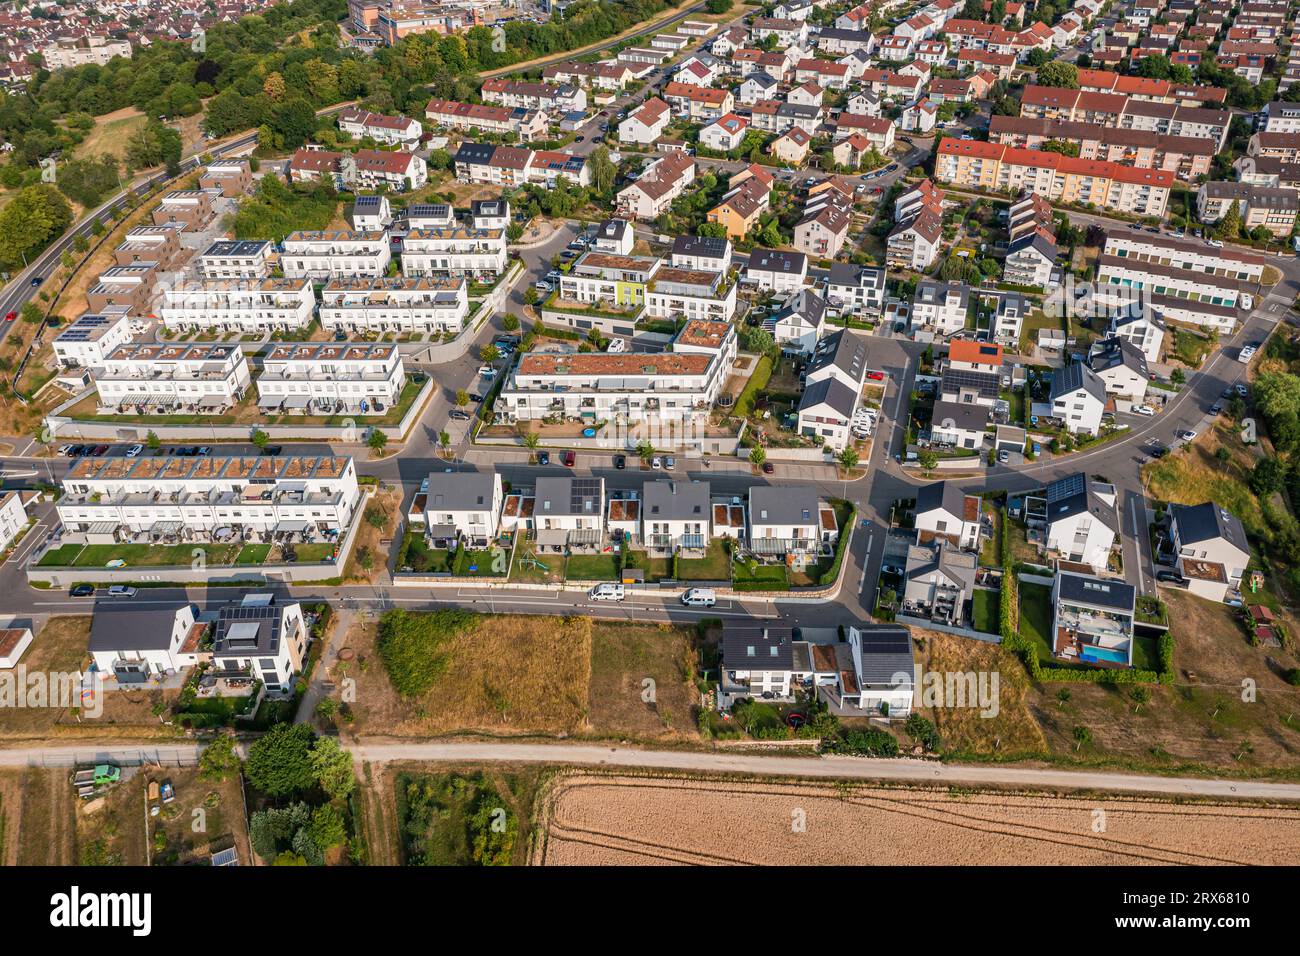 Allemagne, Bade-Wurtemberg, Plochingen, vue aérienne des maisons de banlieue Banque D'Images